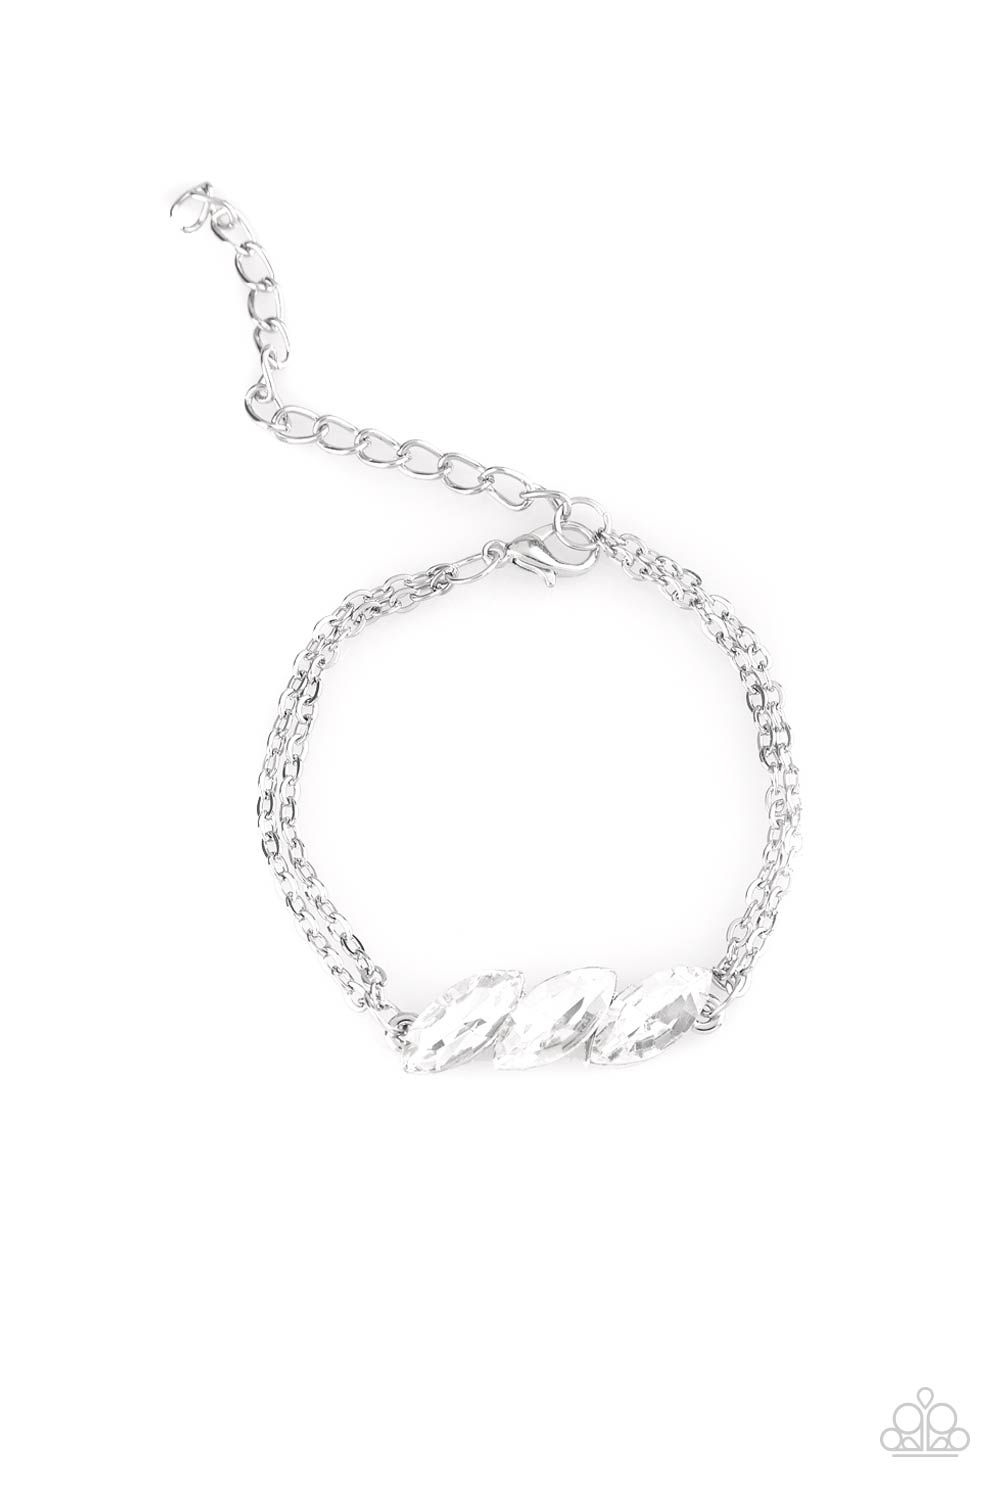 Pretty Priceless - White Bracelet freeshipping - JewLz4u Gemstone Gallery